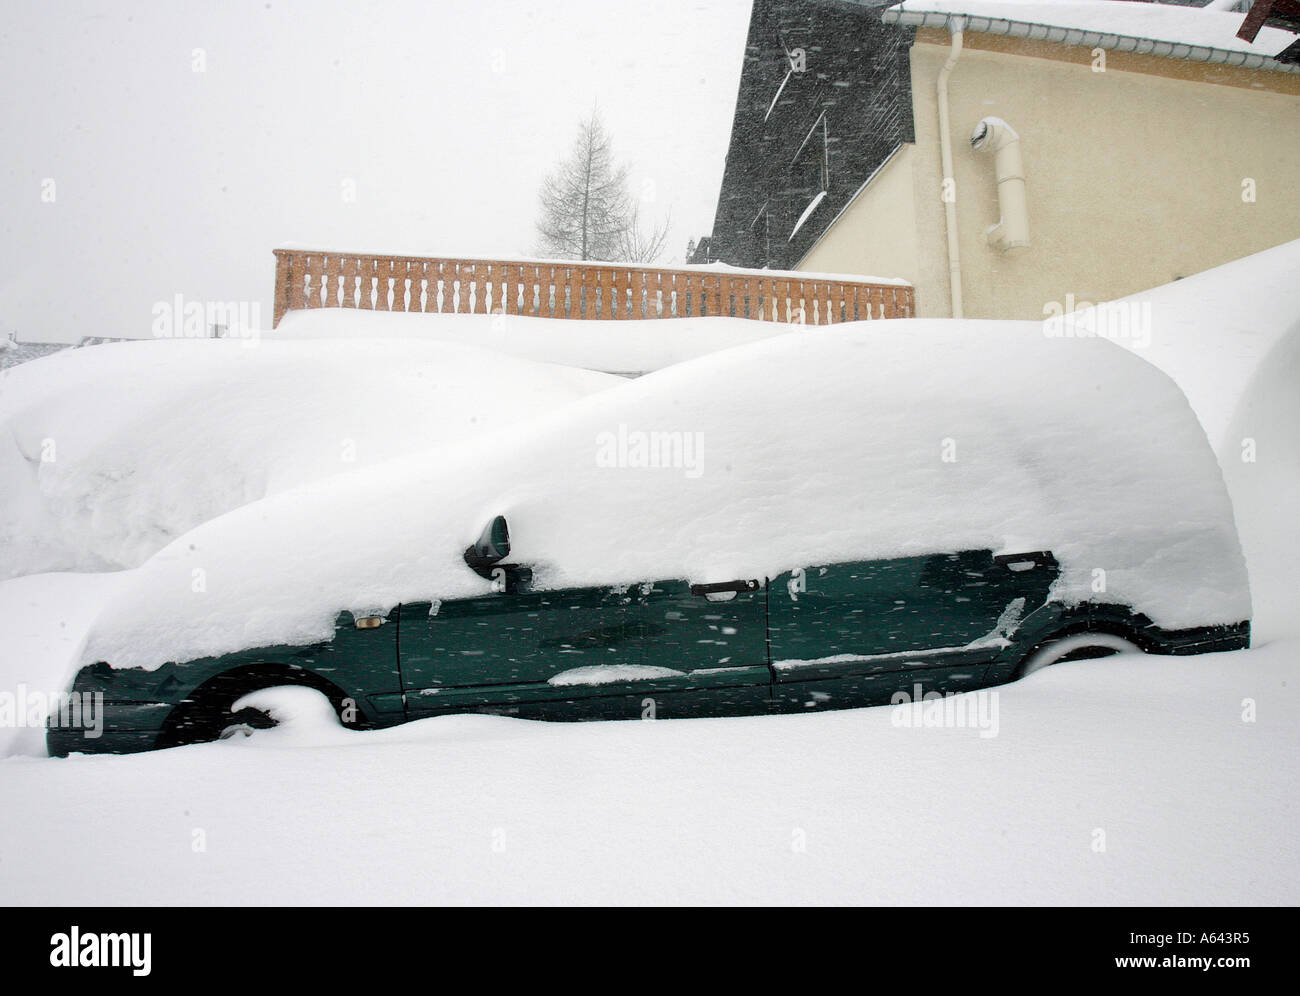 Nevicato in auto a Oberwiesenthal, Monti Metalliferi, Erz Monti Metalliferi, Bassa Sassonia, Germania Foto Stock